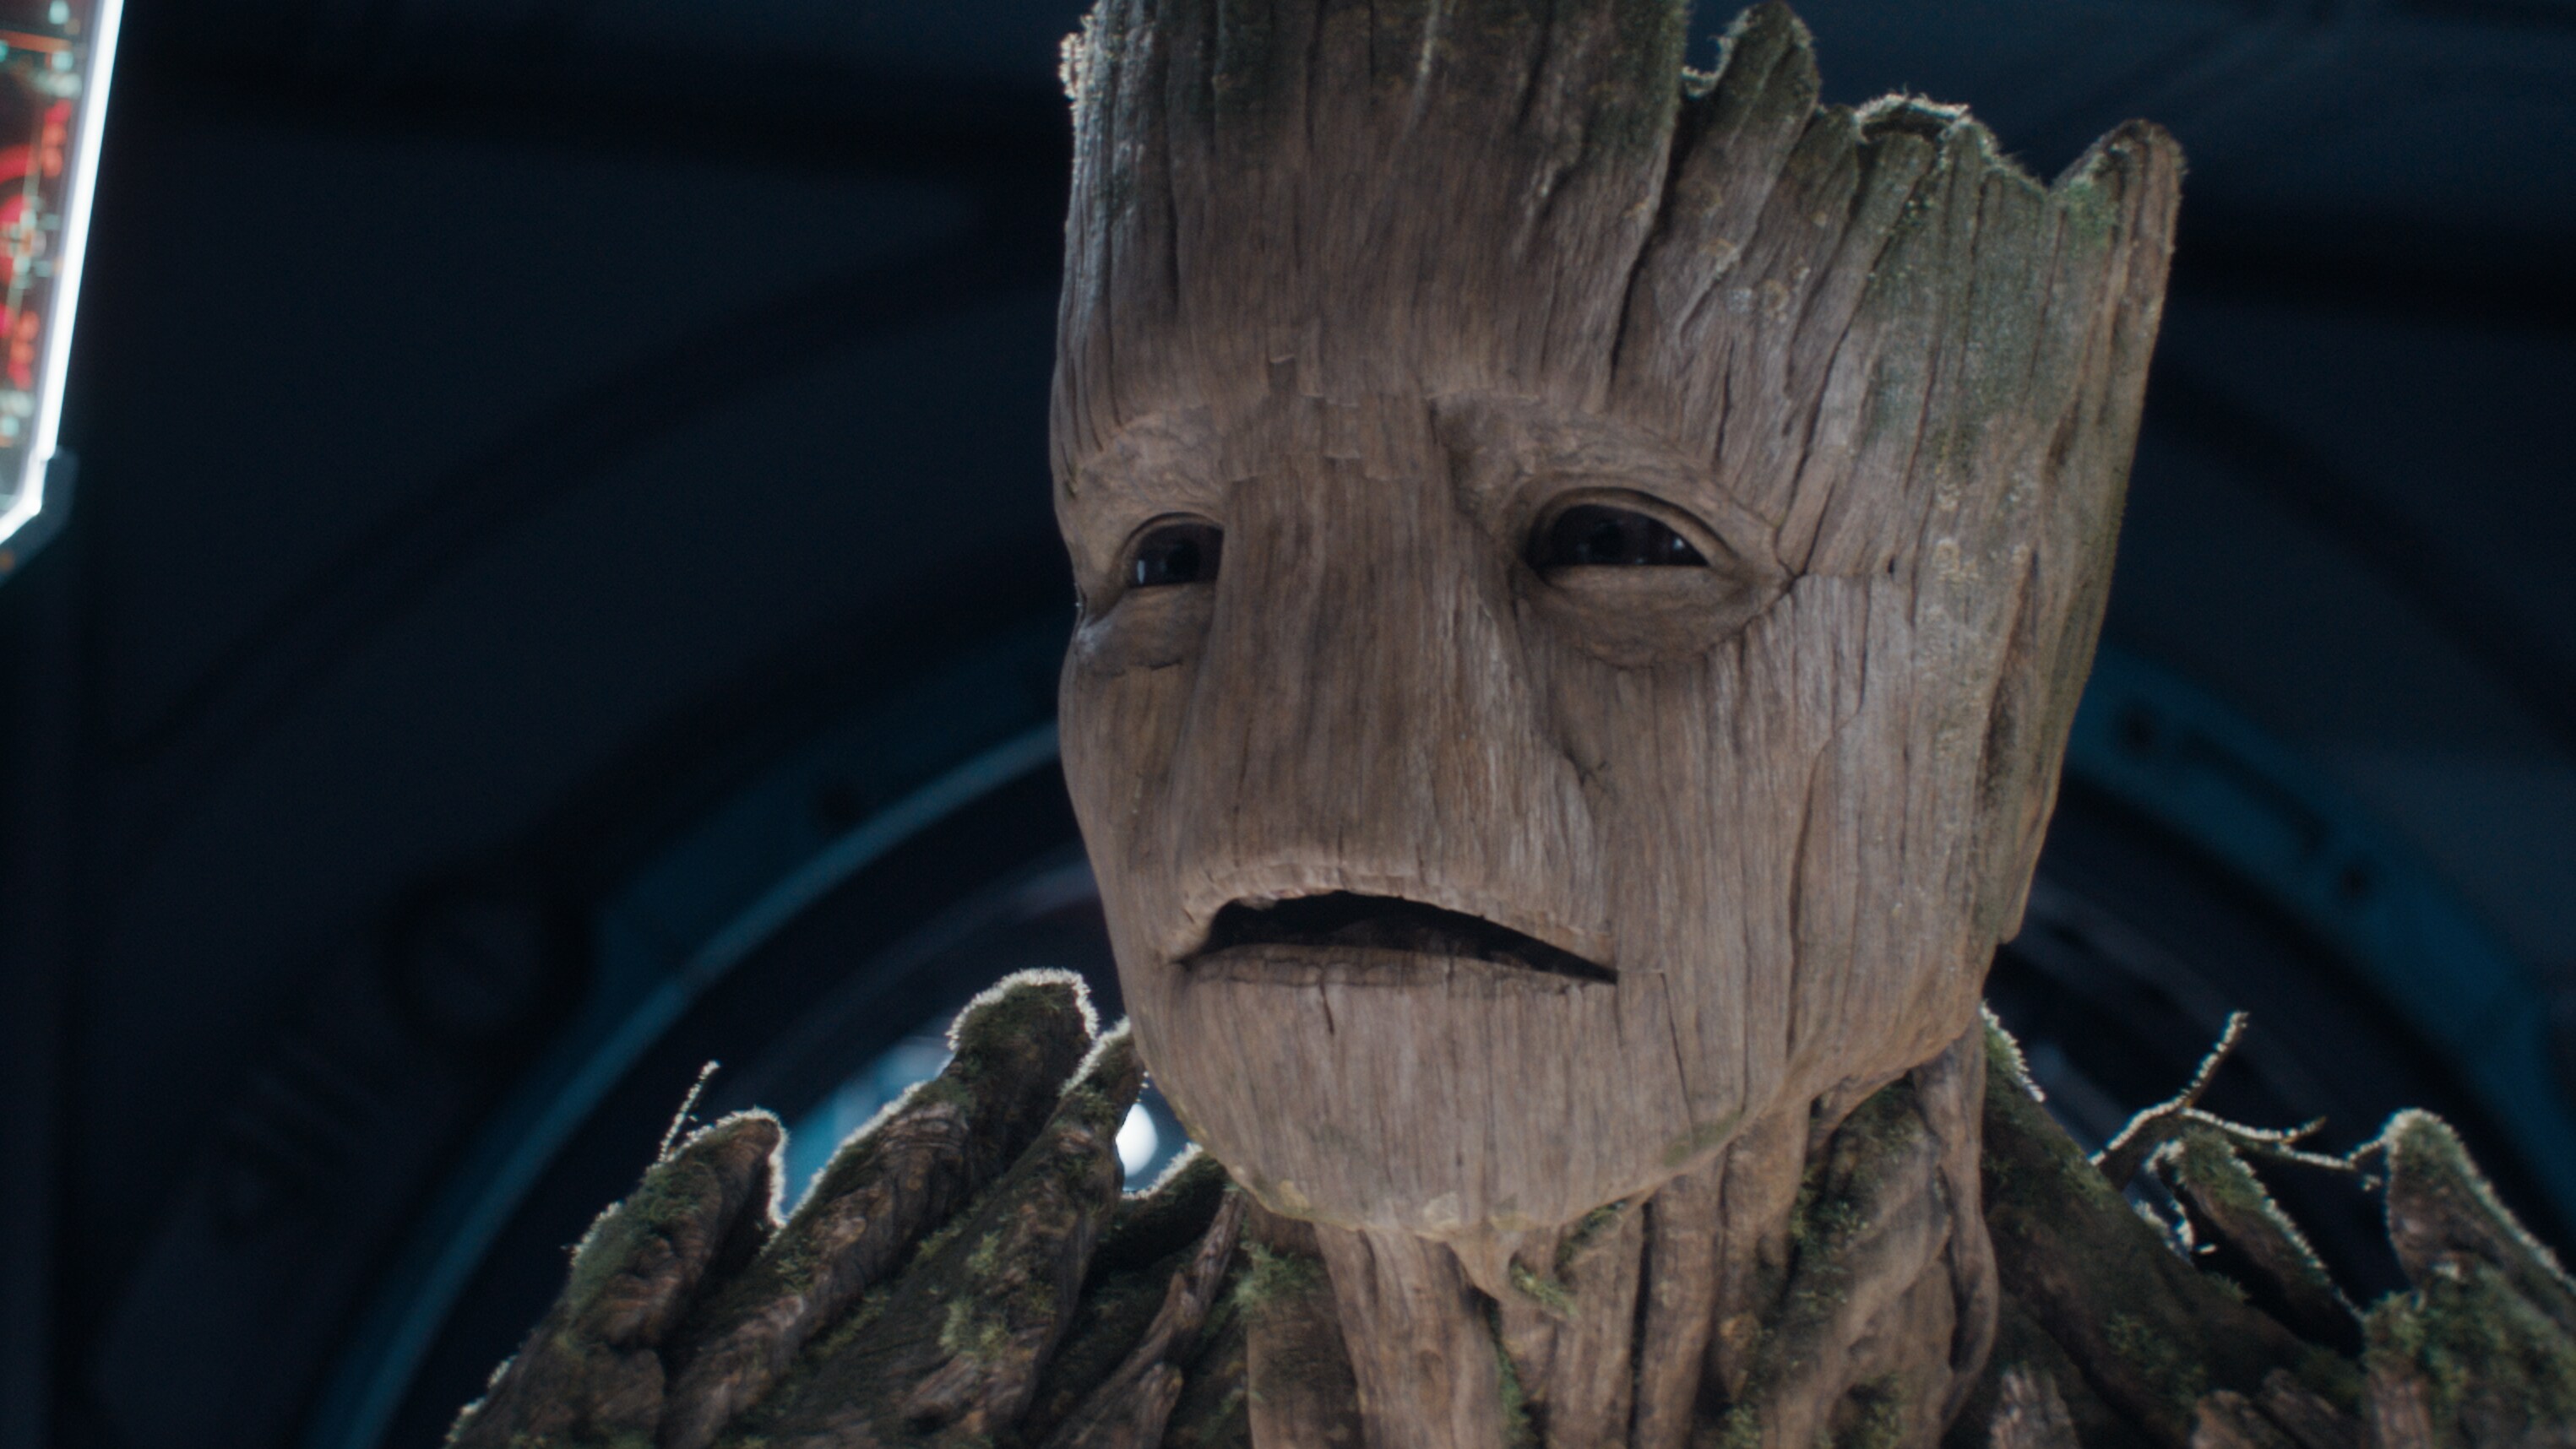 Groot looking worried.